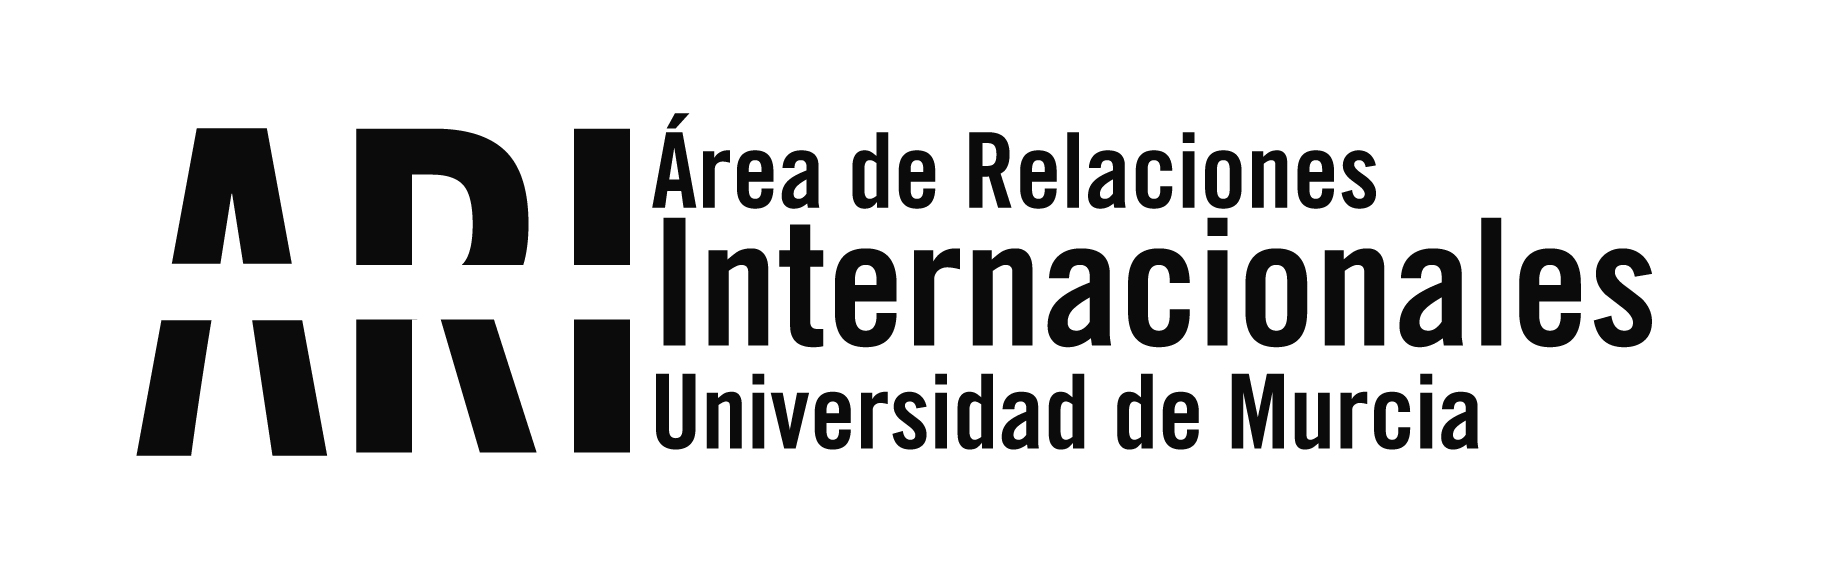 La Universidad de Murcia acoge la reunión del proyecto Erasmus+ CREATEskills - Área de Relaciones Internacionales